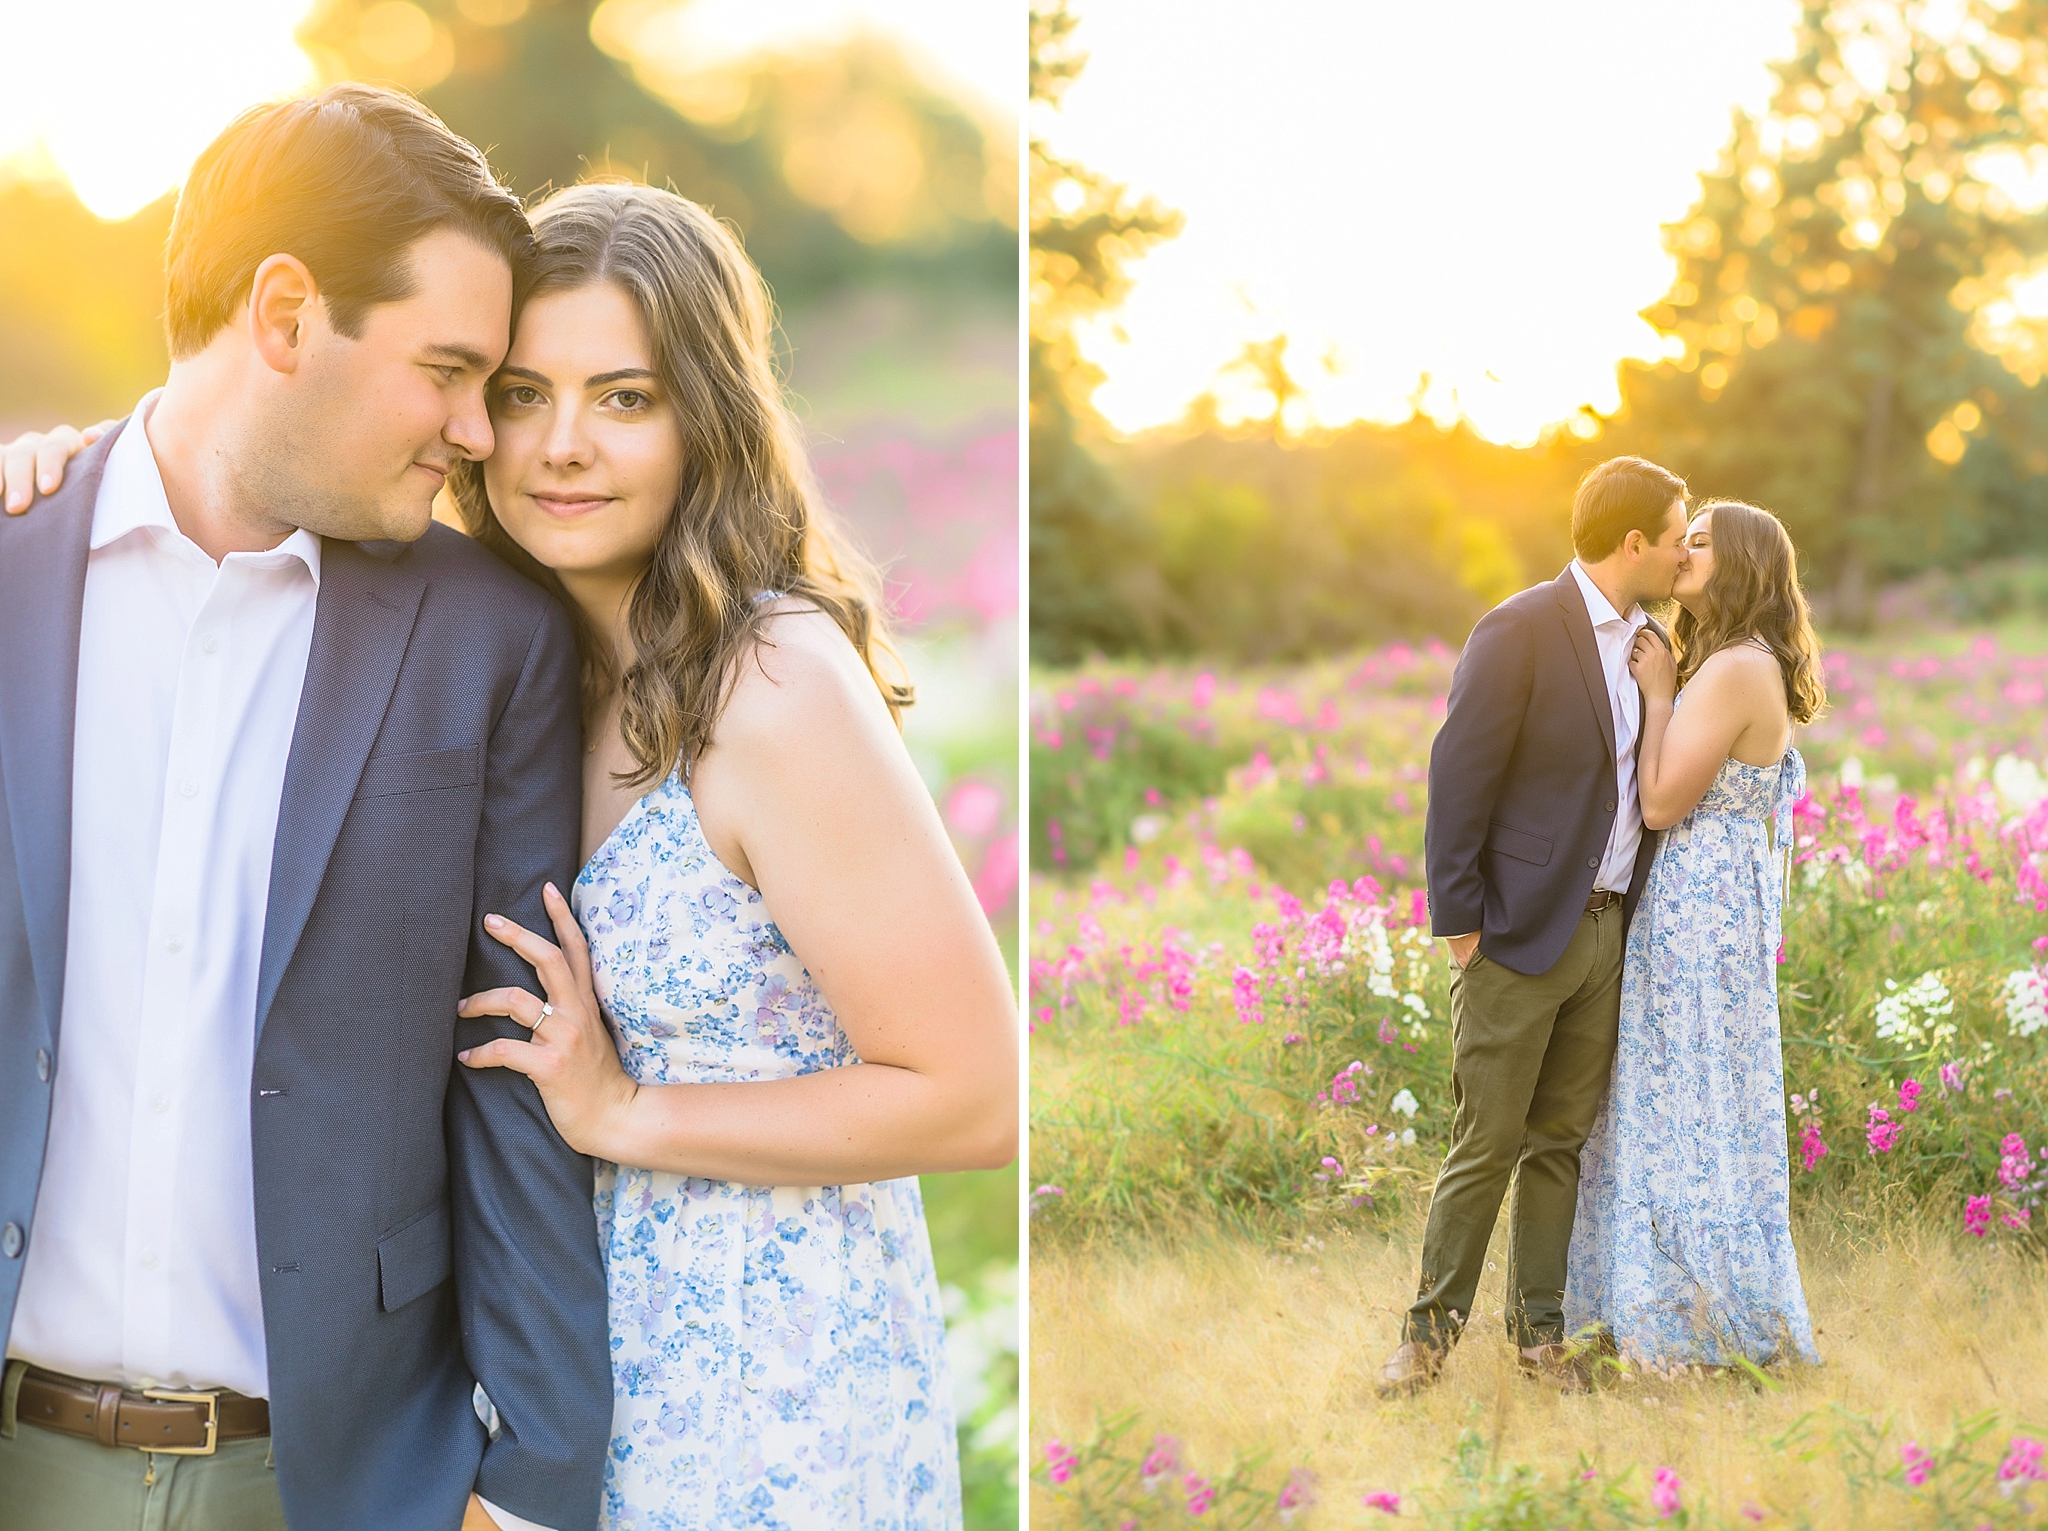 Brendan & Caroline | Seattle, Washington Engagement Photographer